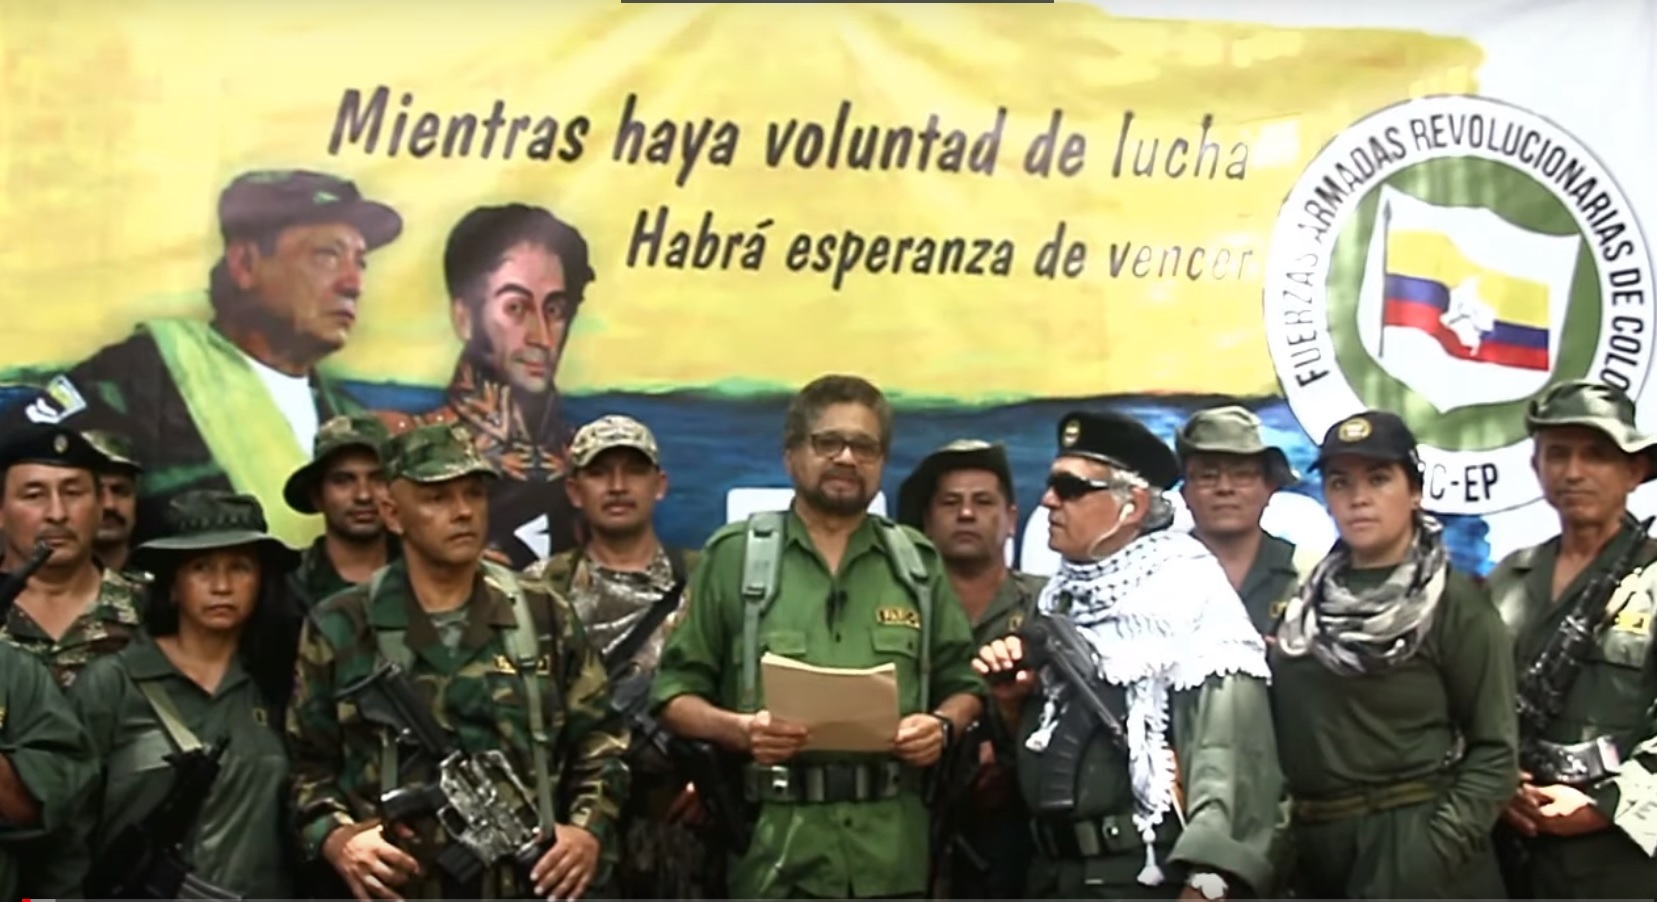 29-08-2019 Iván Márquez y otros disidentes de las FARC anuncian la vuelta a las armas
POLITICA SUDAMÉRICA COLOMBIA INTERNACIONAL
YOUTUBE
